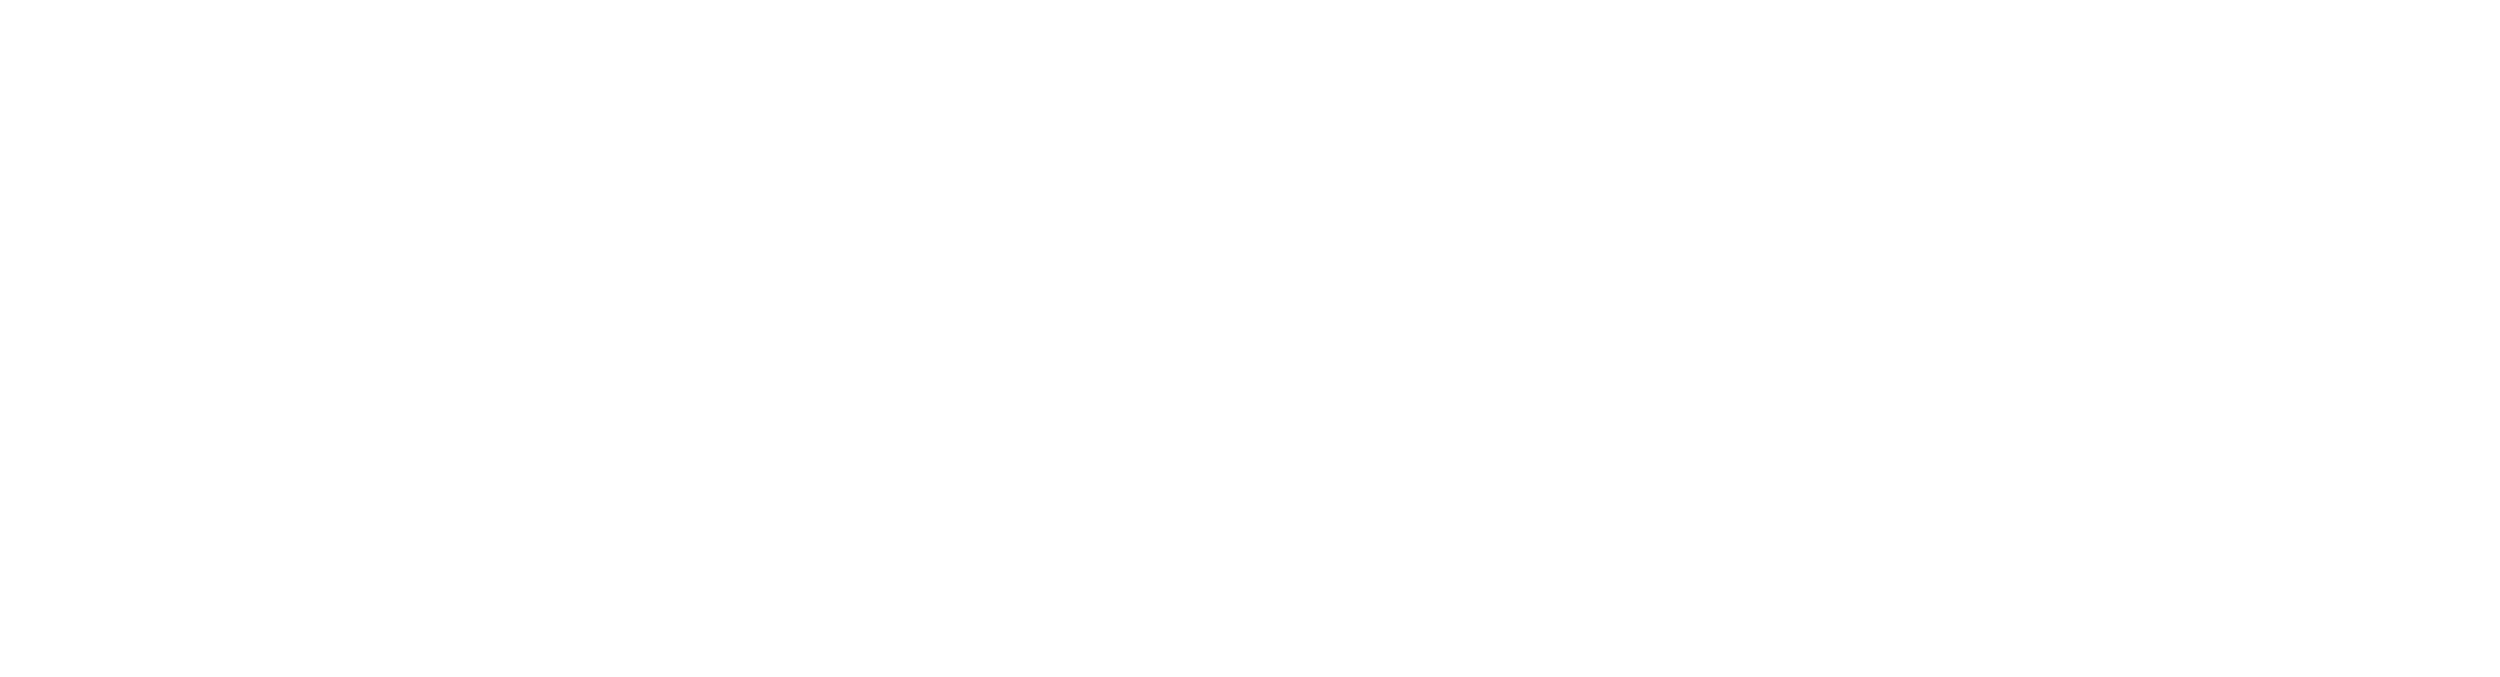 Art Fuent logo trademark white